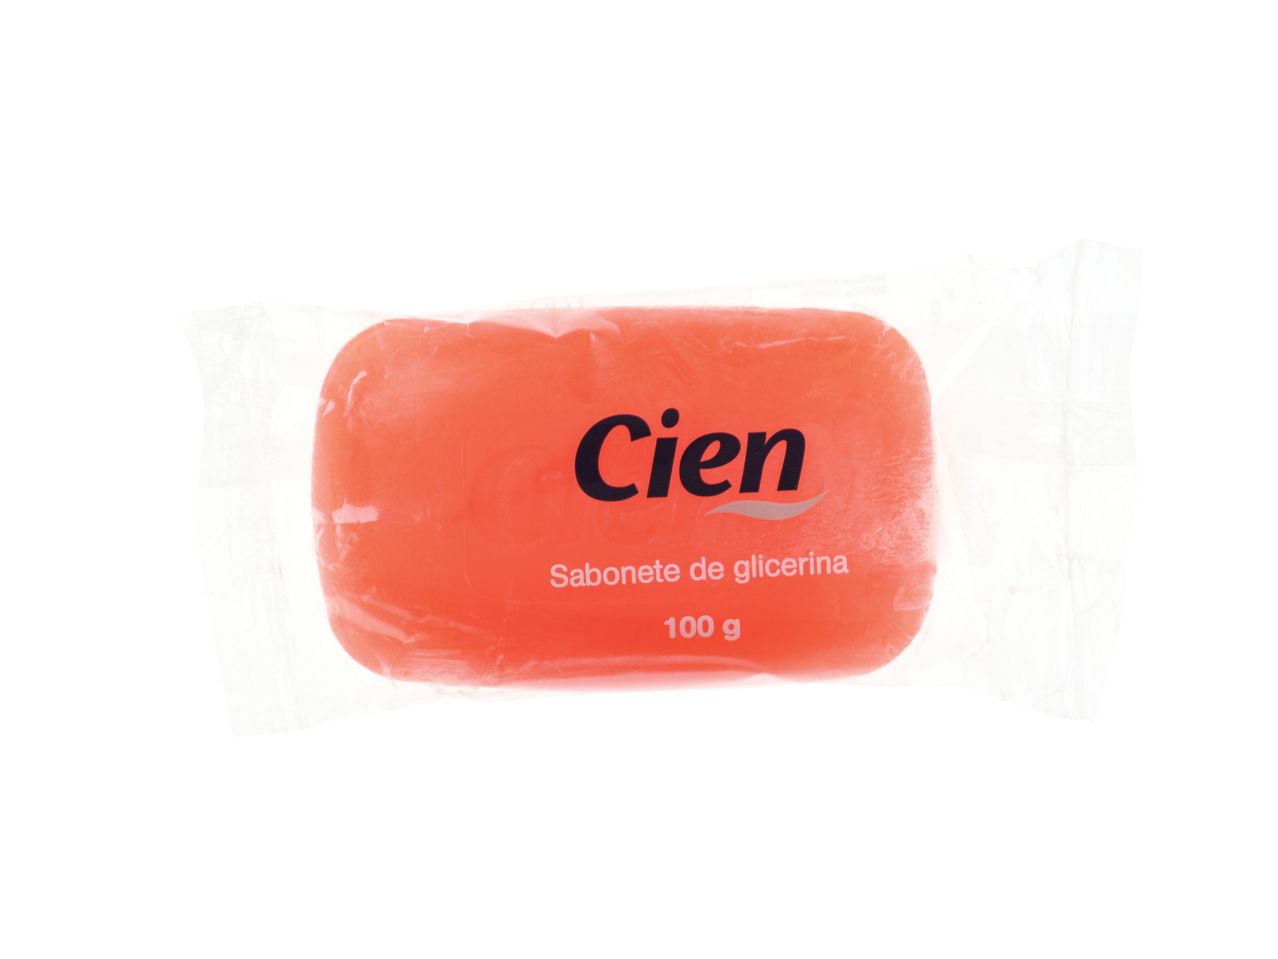 Ver empliada: CIEN® Sabonete de Glicerina - Imagem 1